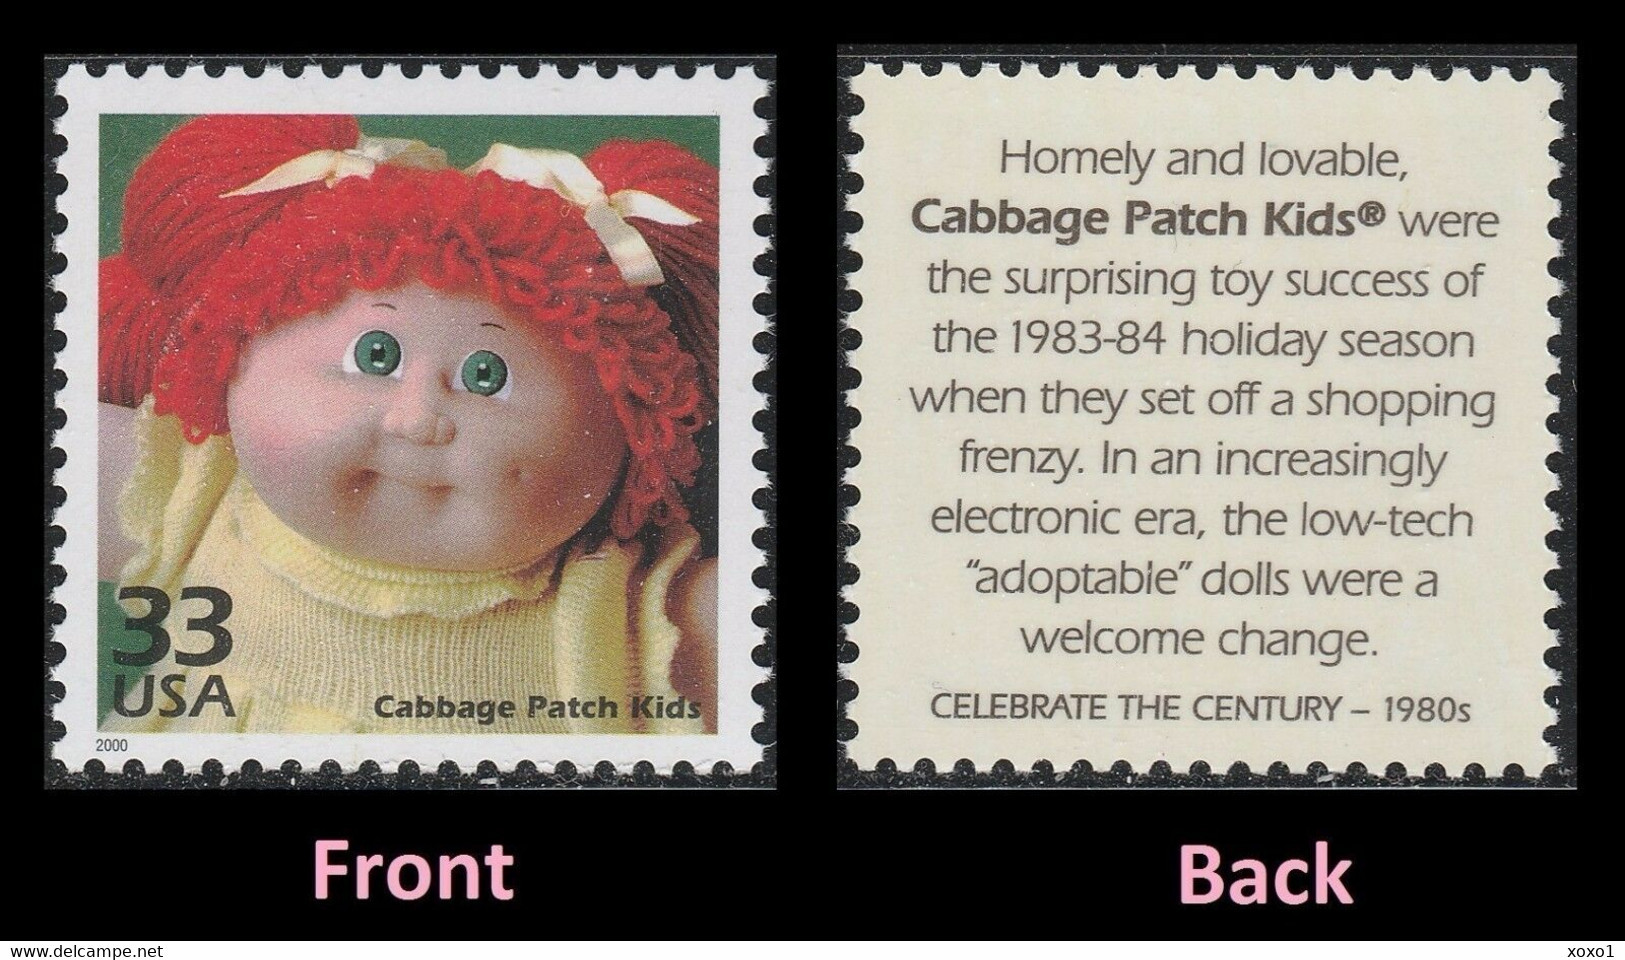 USA 2000 MiNr. 3251 Celebrate The Century 1980s  Childhood "Cabbage Patch Kids" Toy Dolls 1v MNH ** 0,80 € - Muñecas